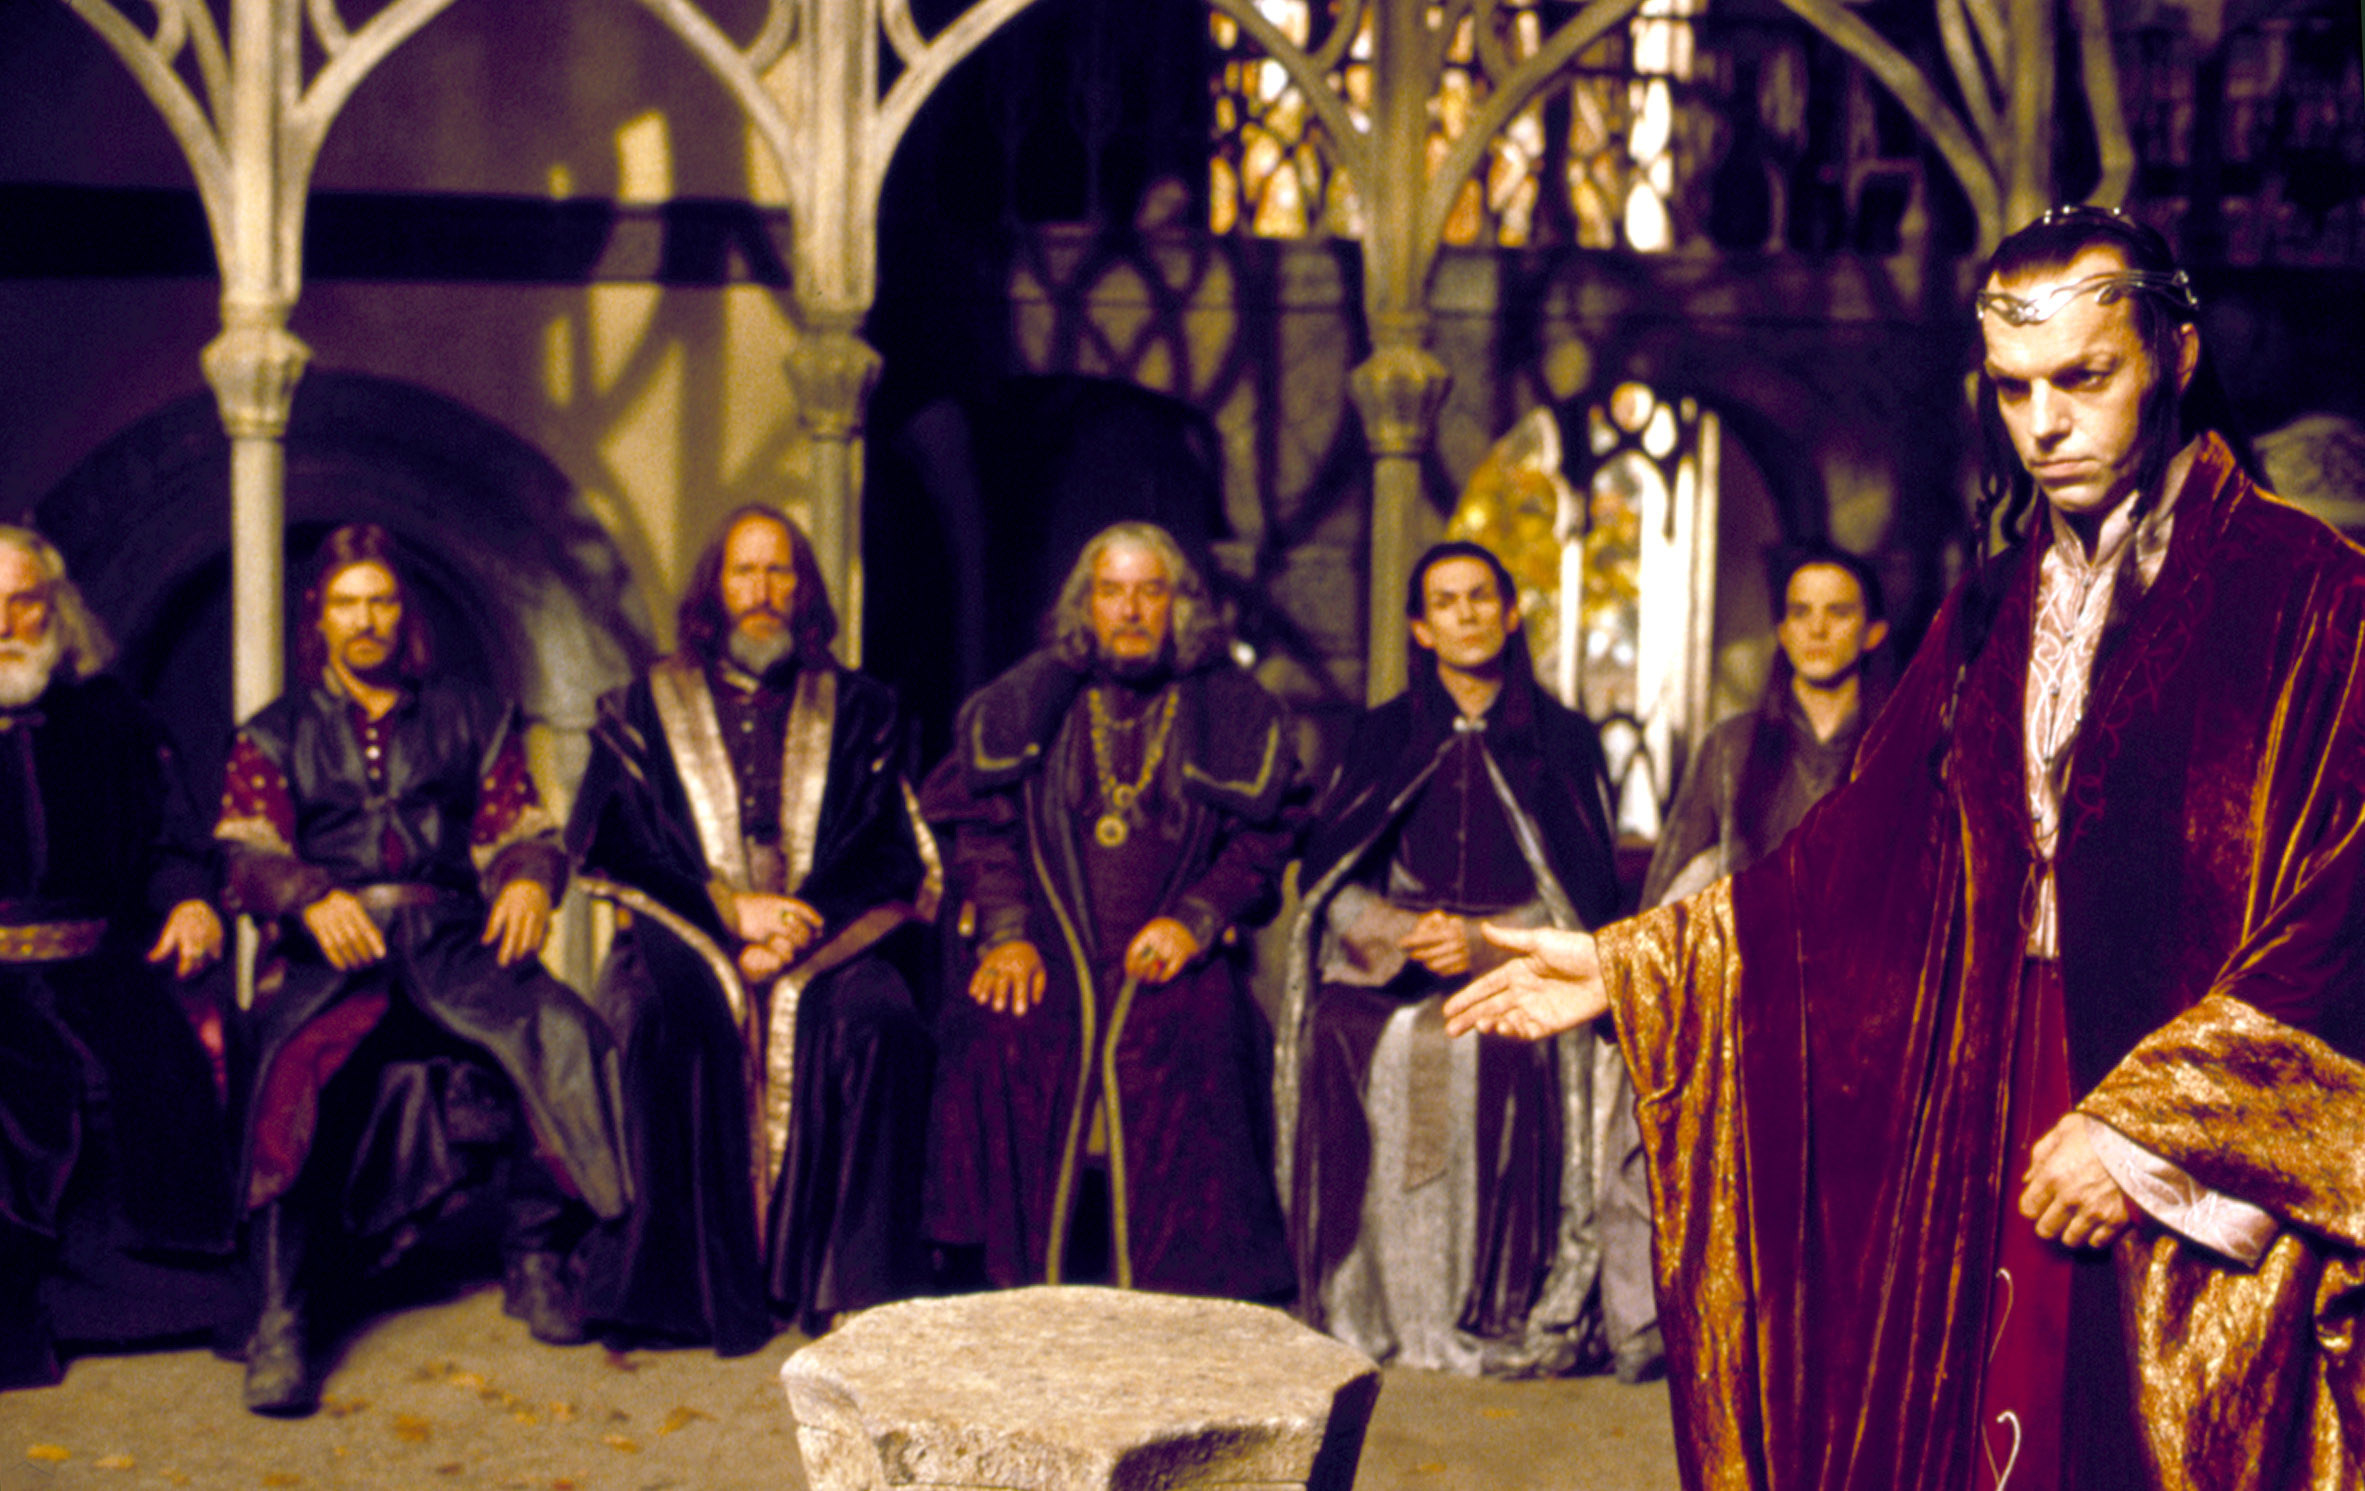 Hugo Weaving as Elrond